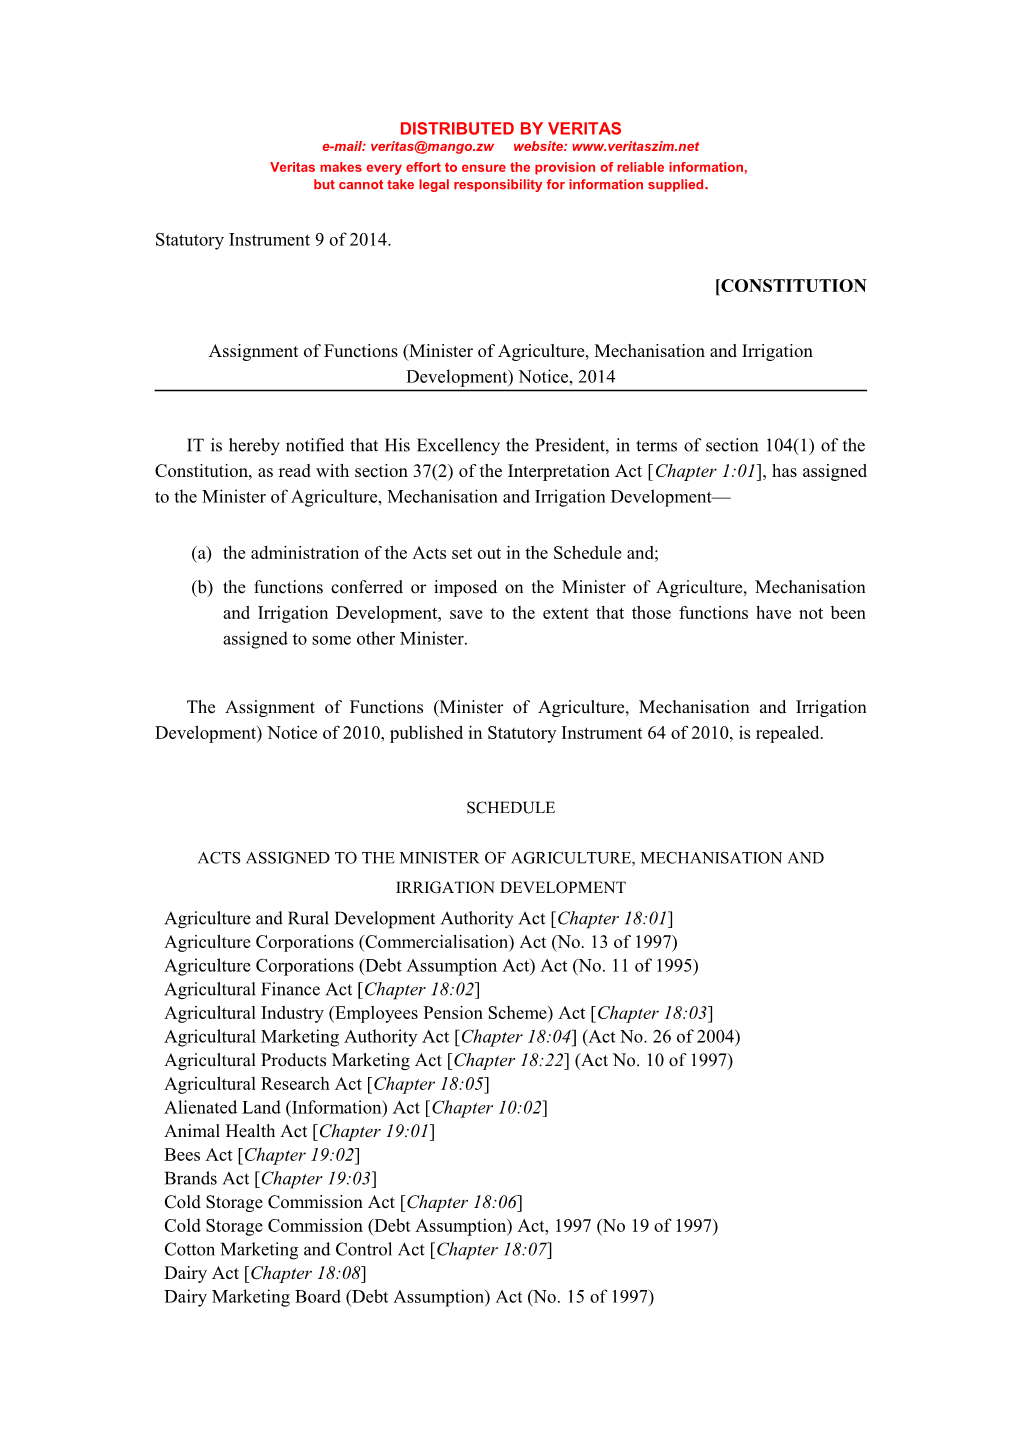 Statutory Instrument 9 of 2014